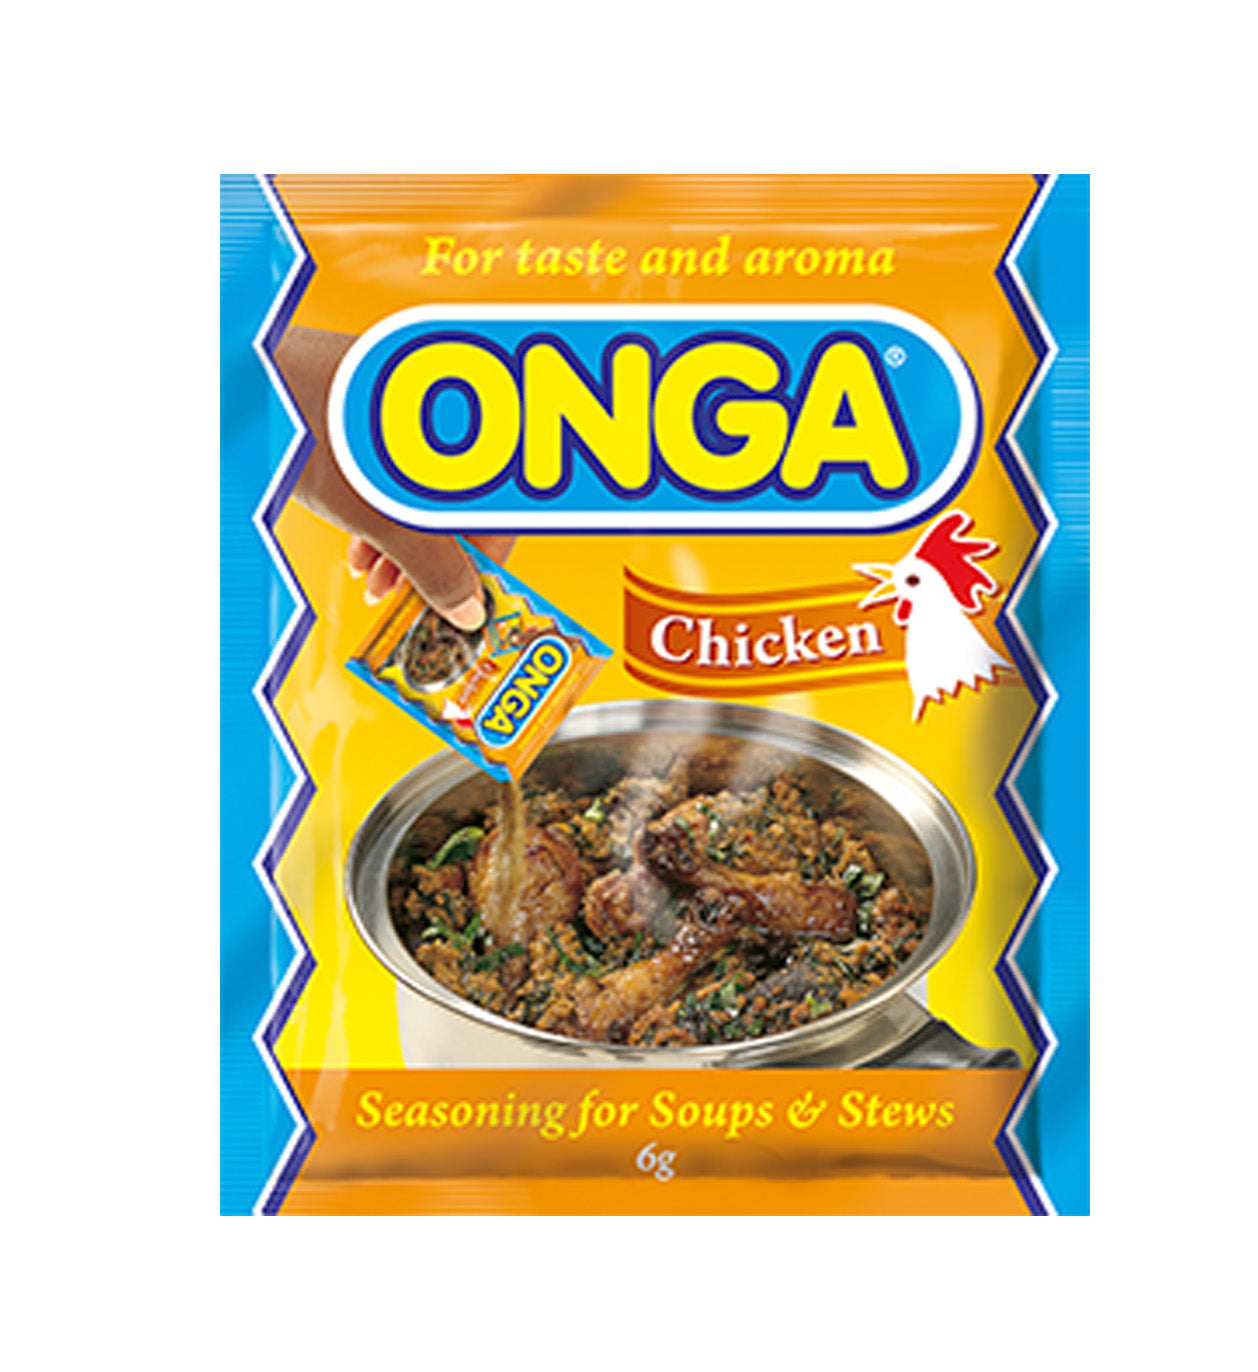 Onga Chicken Seasoning 6g